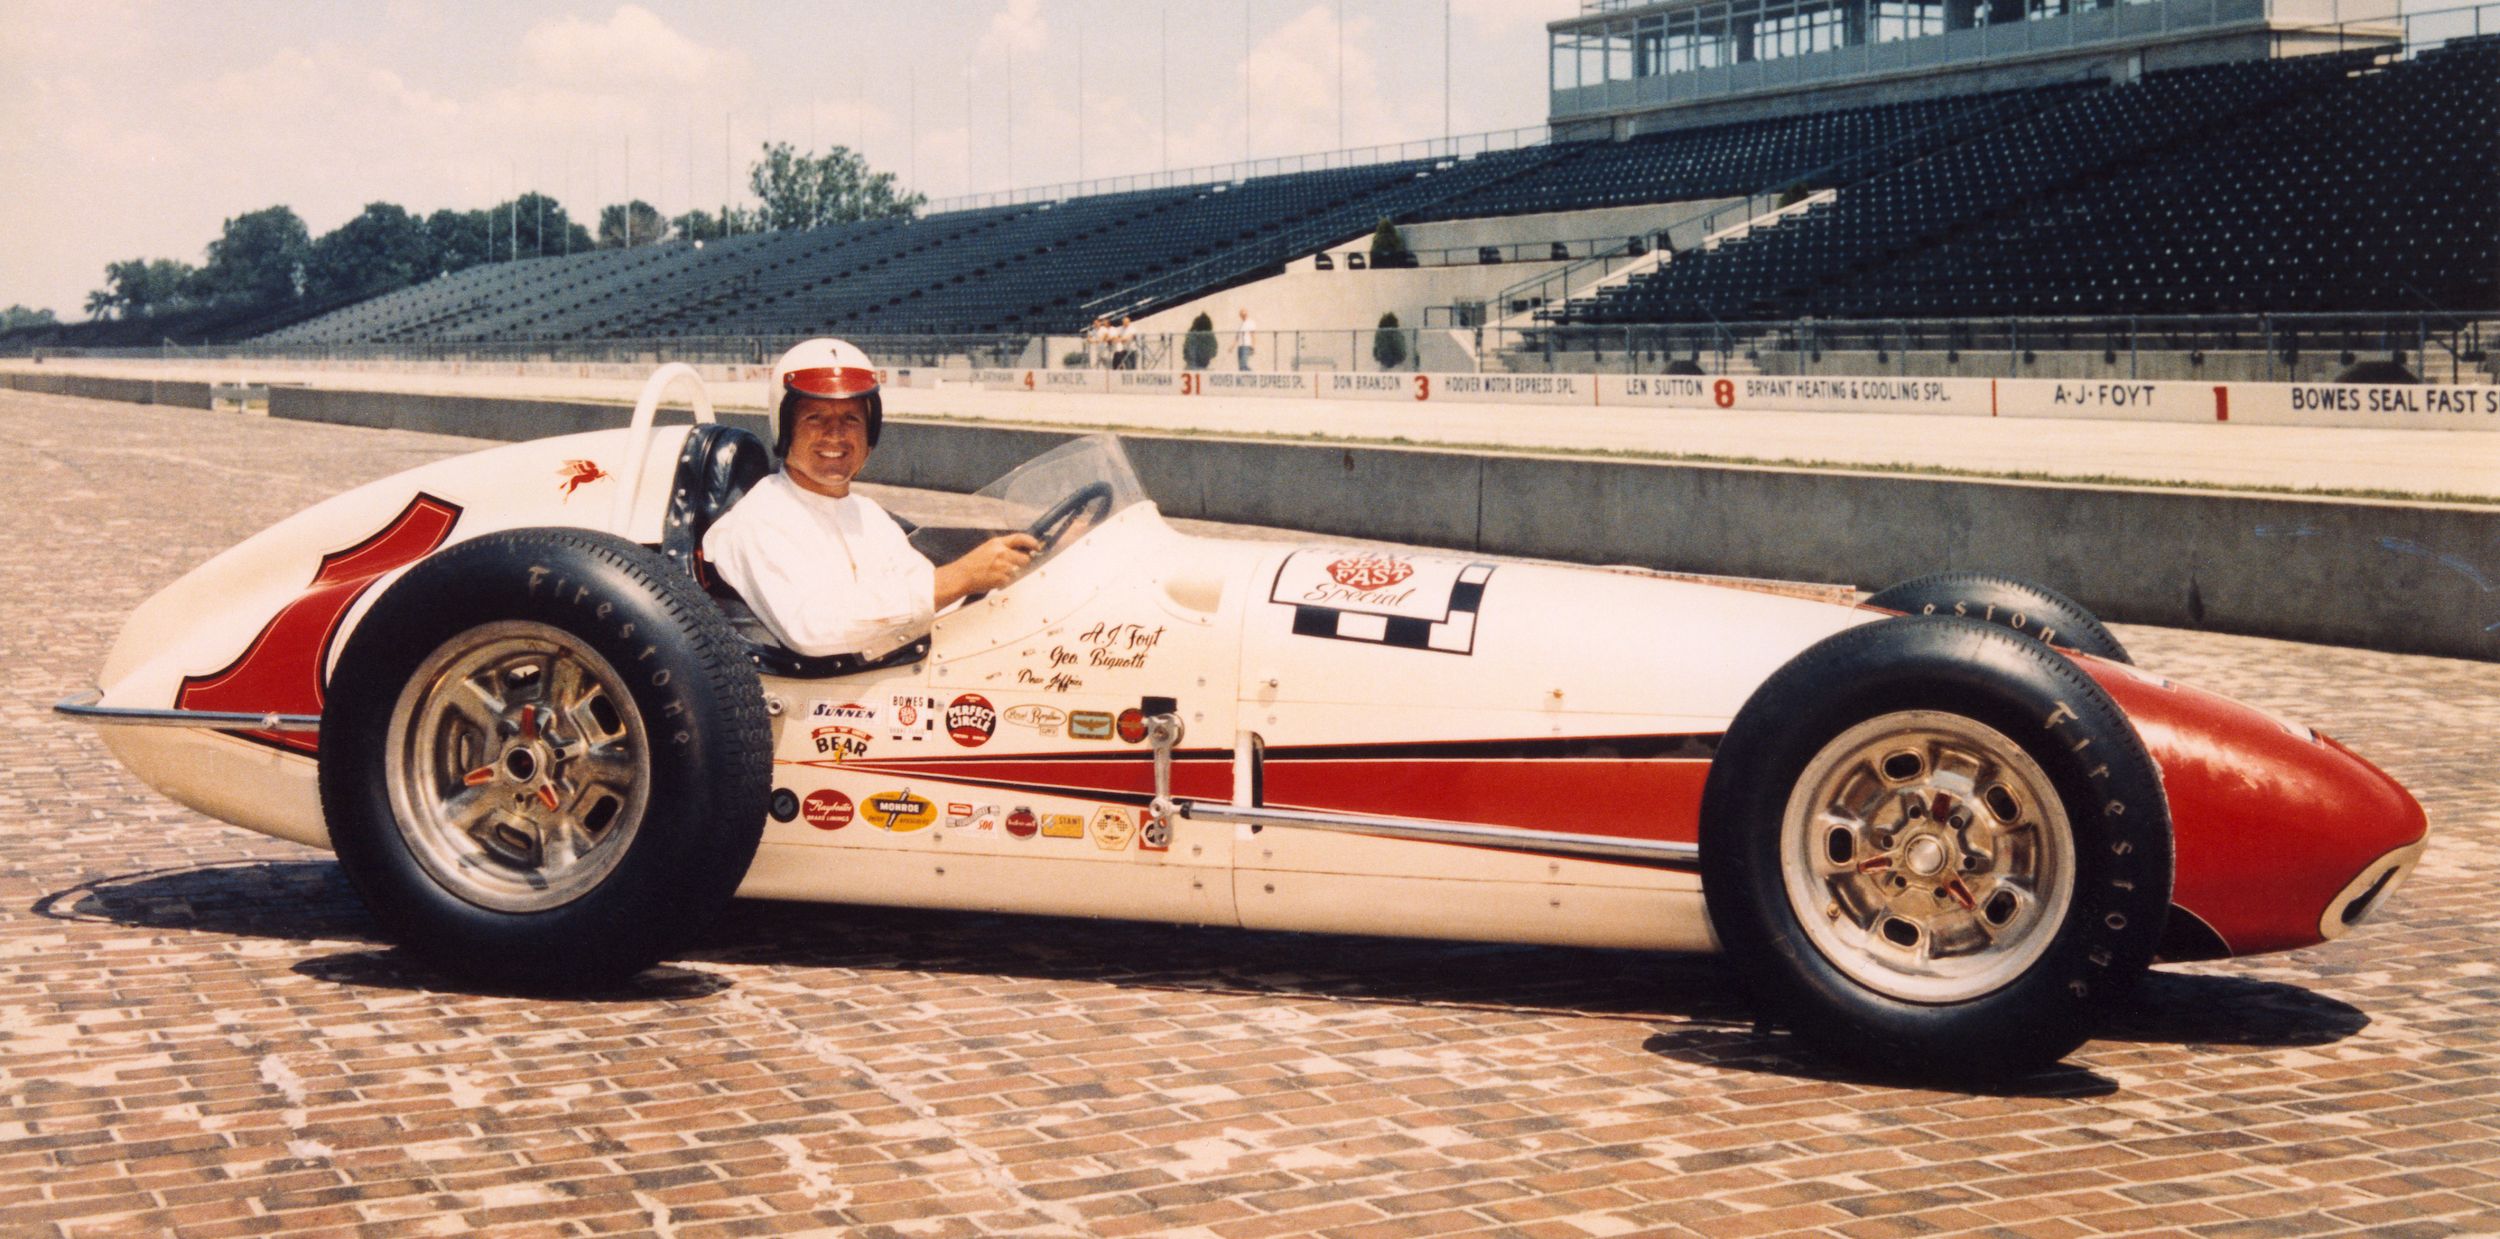 Den første seieren i Indy 500 kom i 1961. Året etter ble mursteinene lagt asfalt over (minus en liten bit for tradisjonens skyld). Foto: Indianapolis Motor Speedway